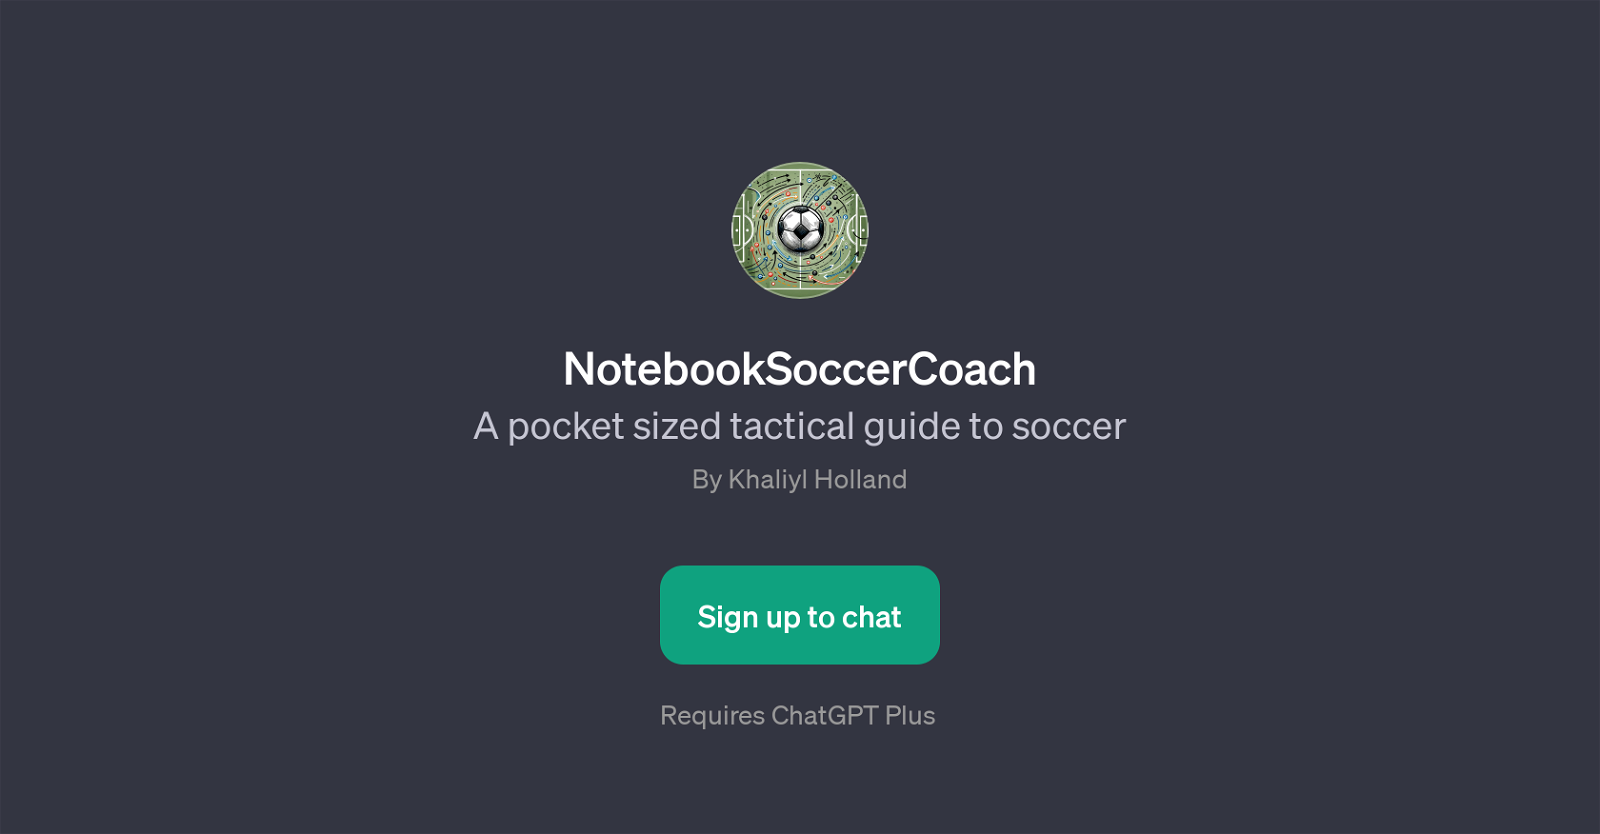 NotebookSoccerCoach website